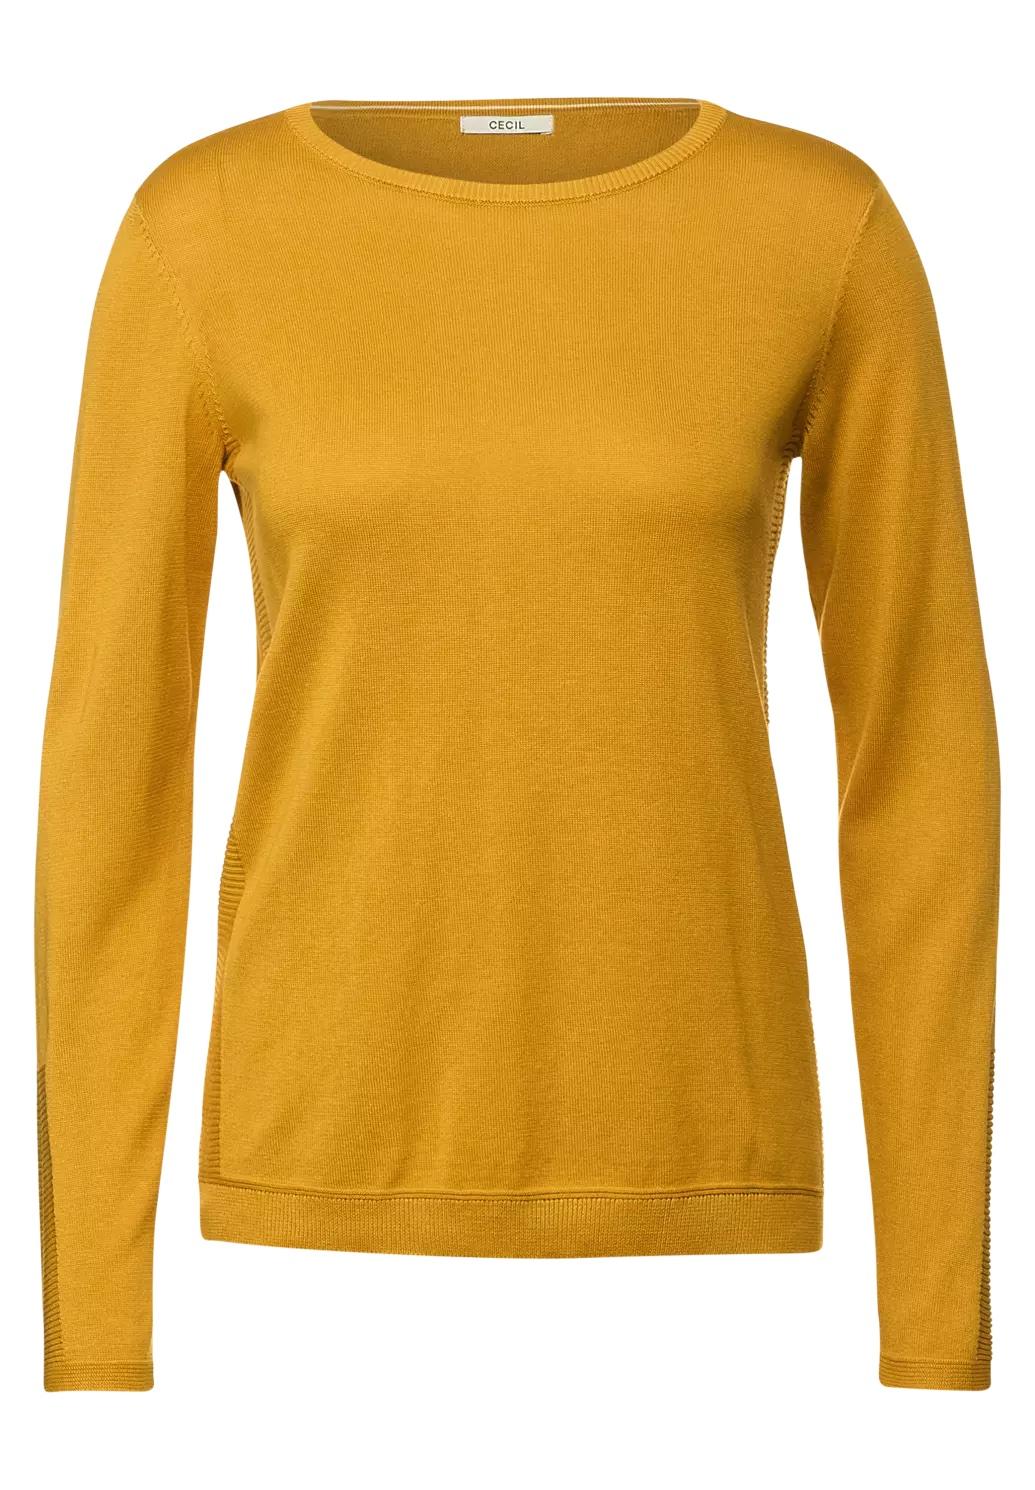 CECIL základný sveter, žlt.